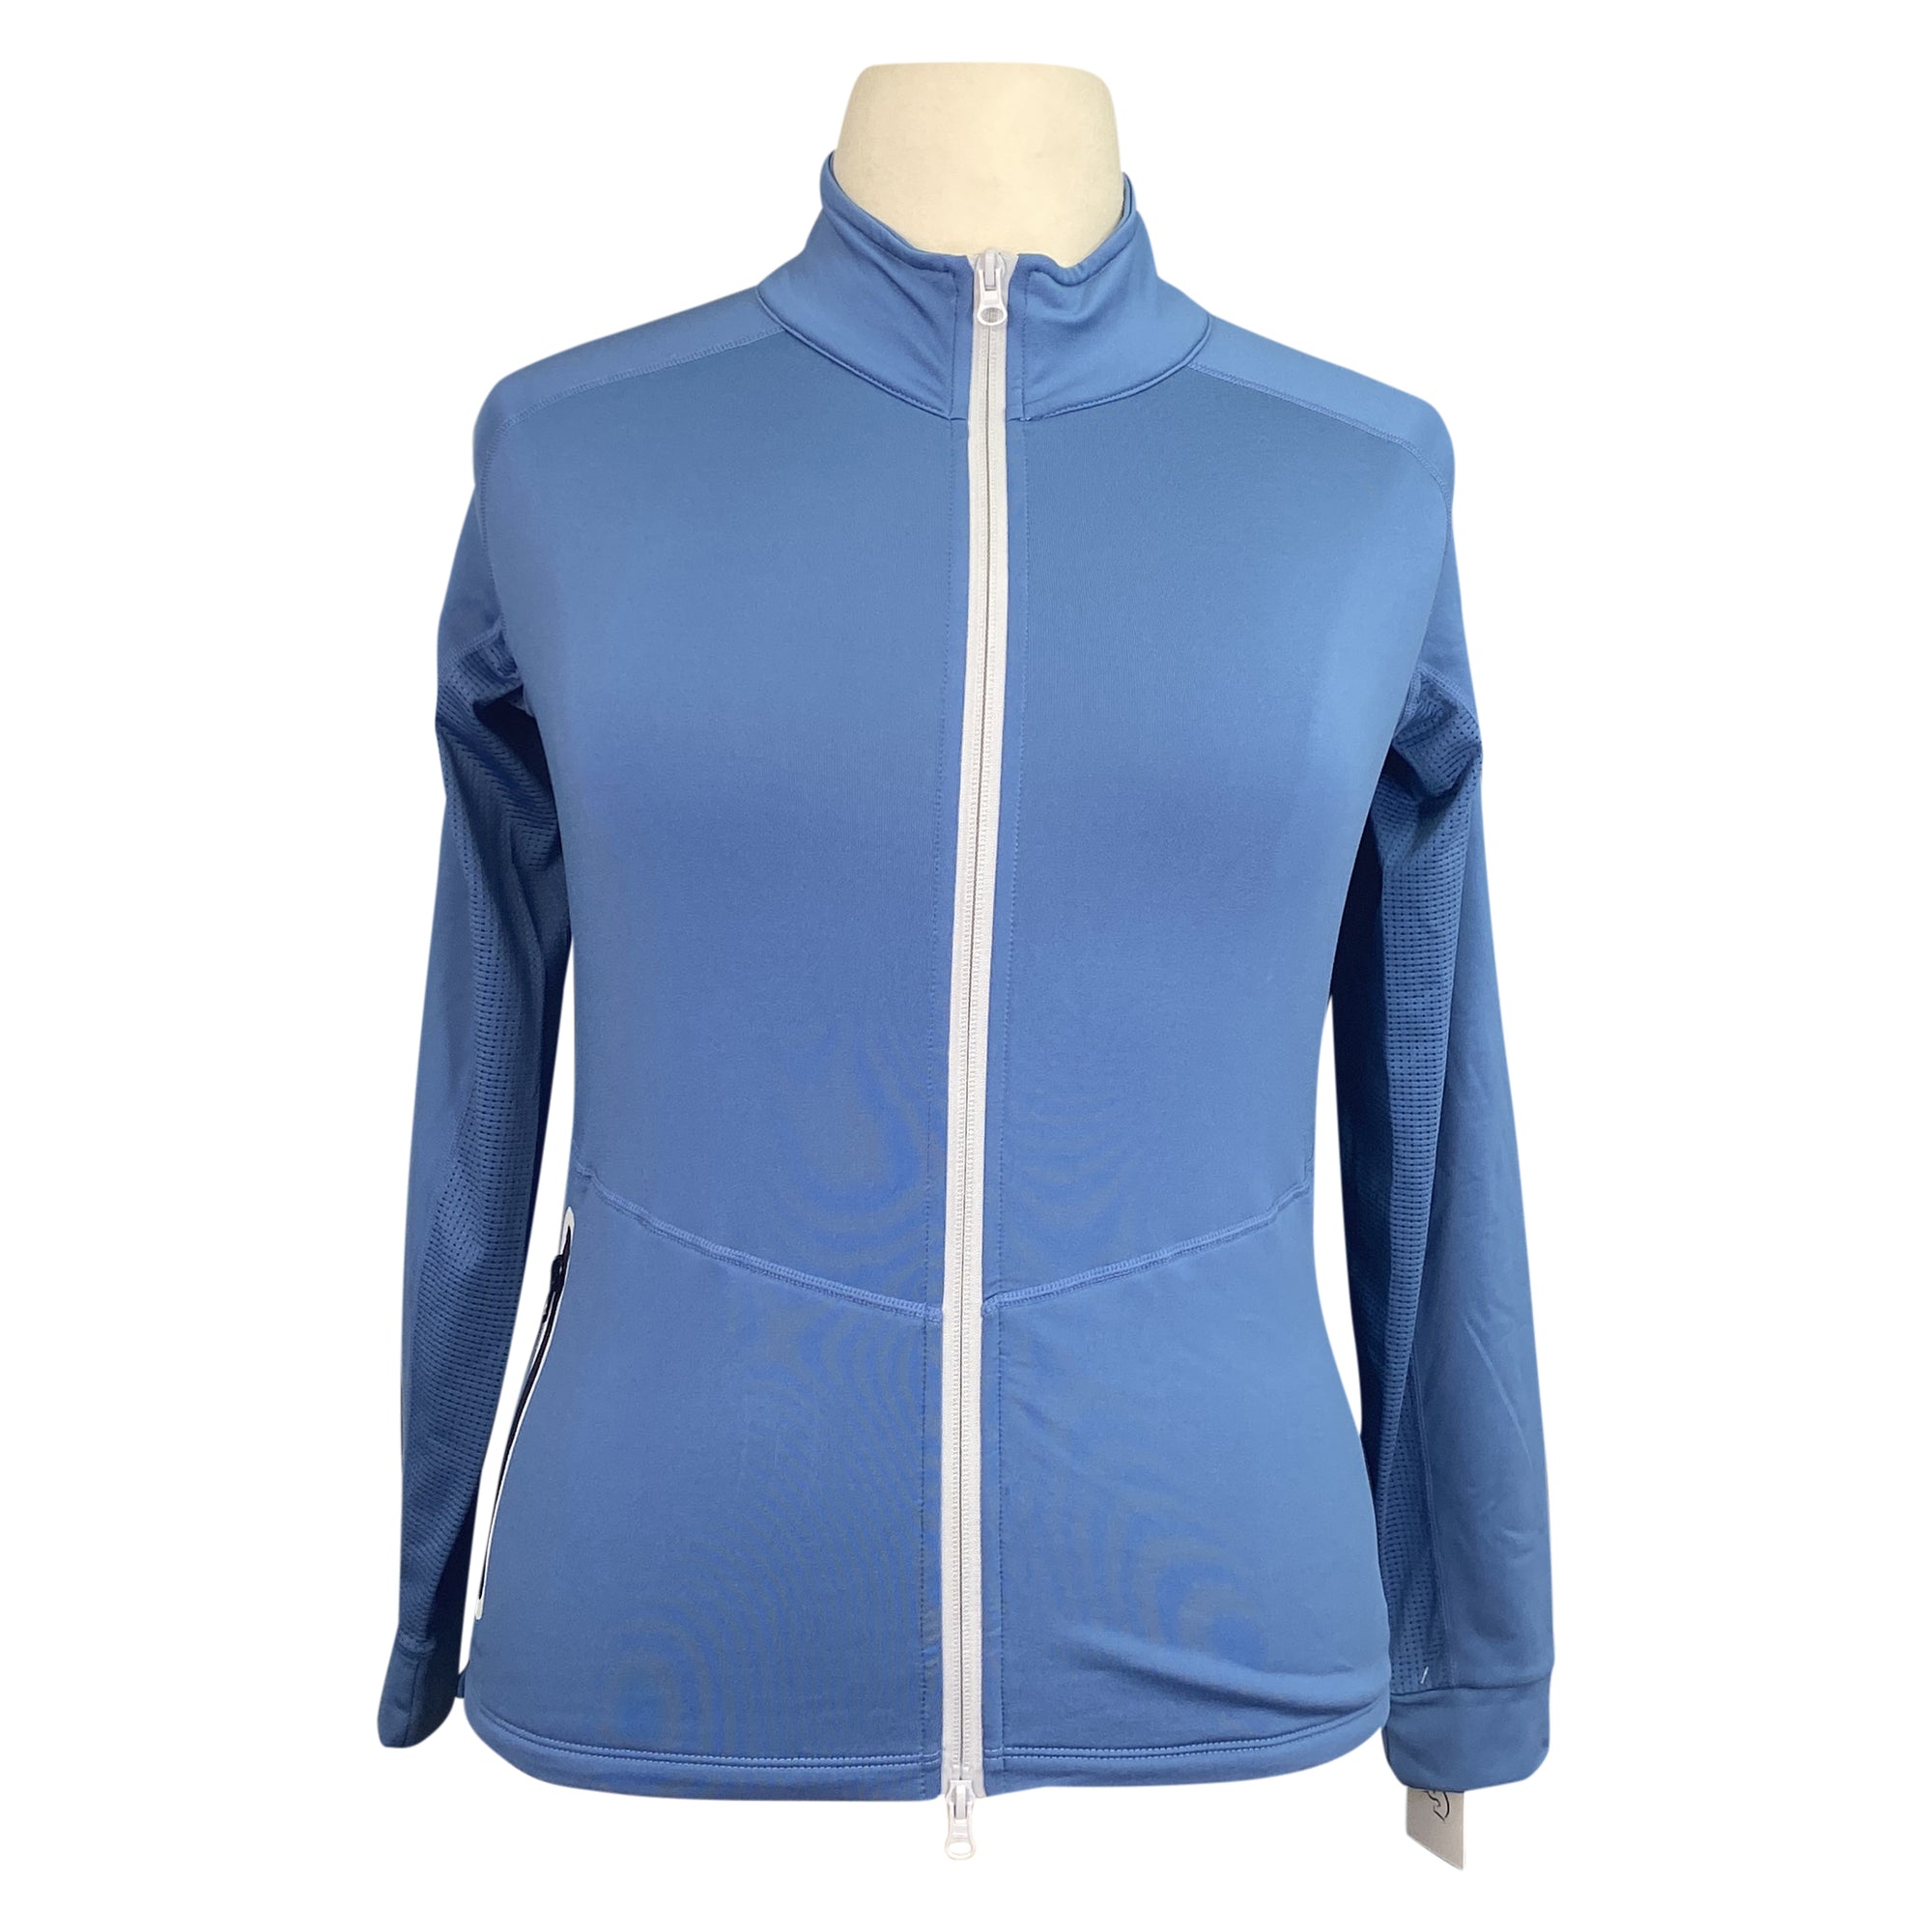 Horze 'Vera' Sweat Jacket in Coronet BlueHorze 'Vera' Sweat Jacket in Coronet Blue